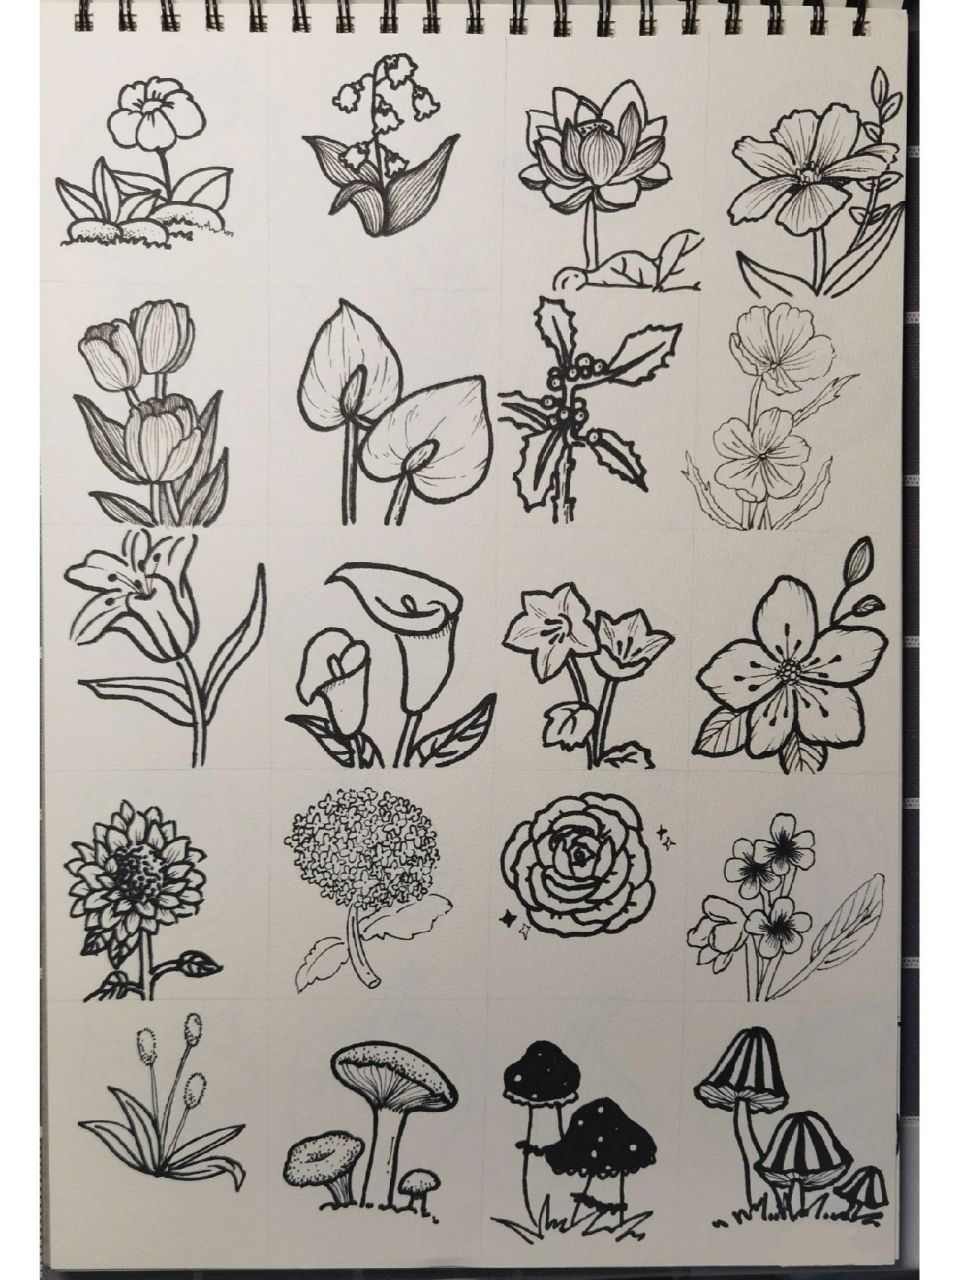 植物类简笔画Ⅰ黑白手绘Ⅰ手绘简笔画Ⅰ临摹 这周的简笔画作业来喽